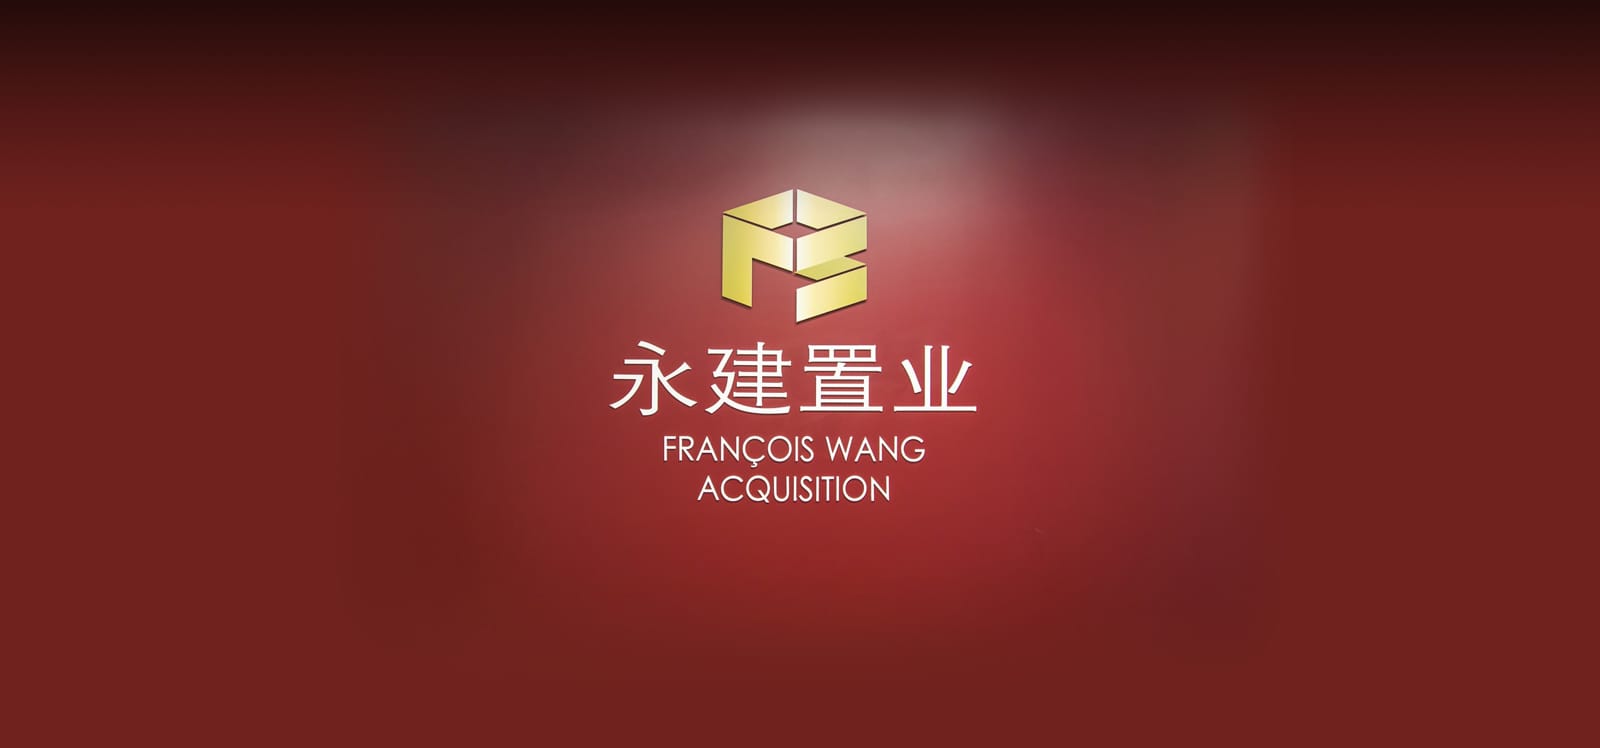 François Wang Acquisition